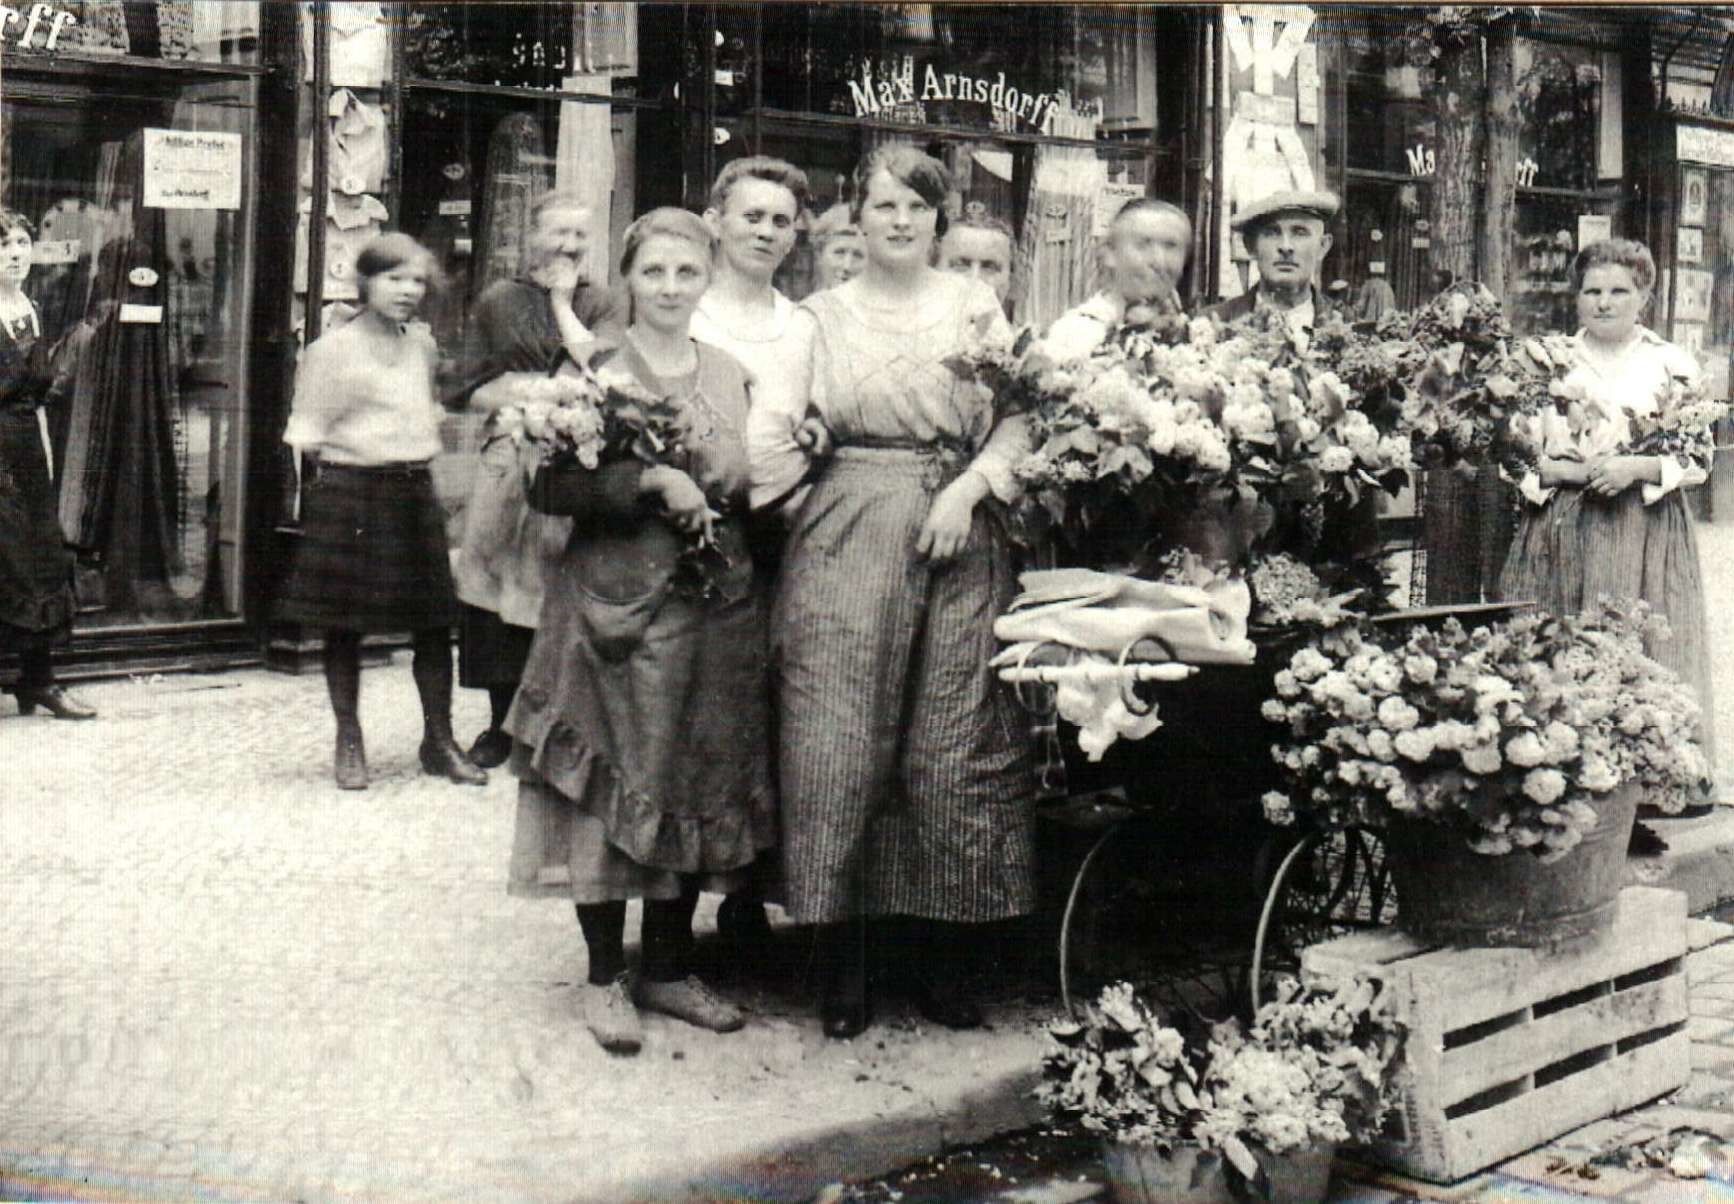 Blumenstand von Luise Bommert vor dem Kaufhaus Max Arnsdorff, Ecke Berg- und Prinz Handjery-Straße (heute Ecke Karl-Marx- und Briesestraße), 1921